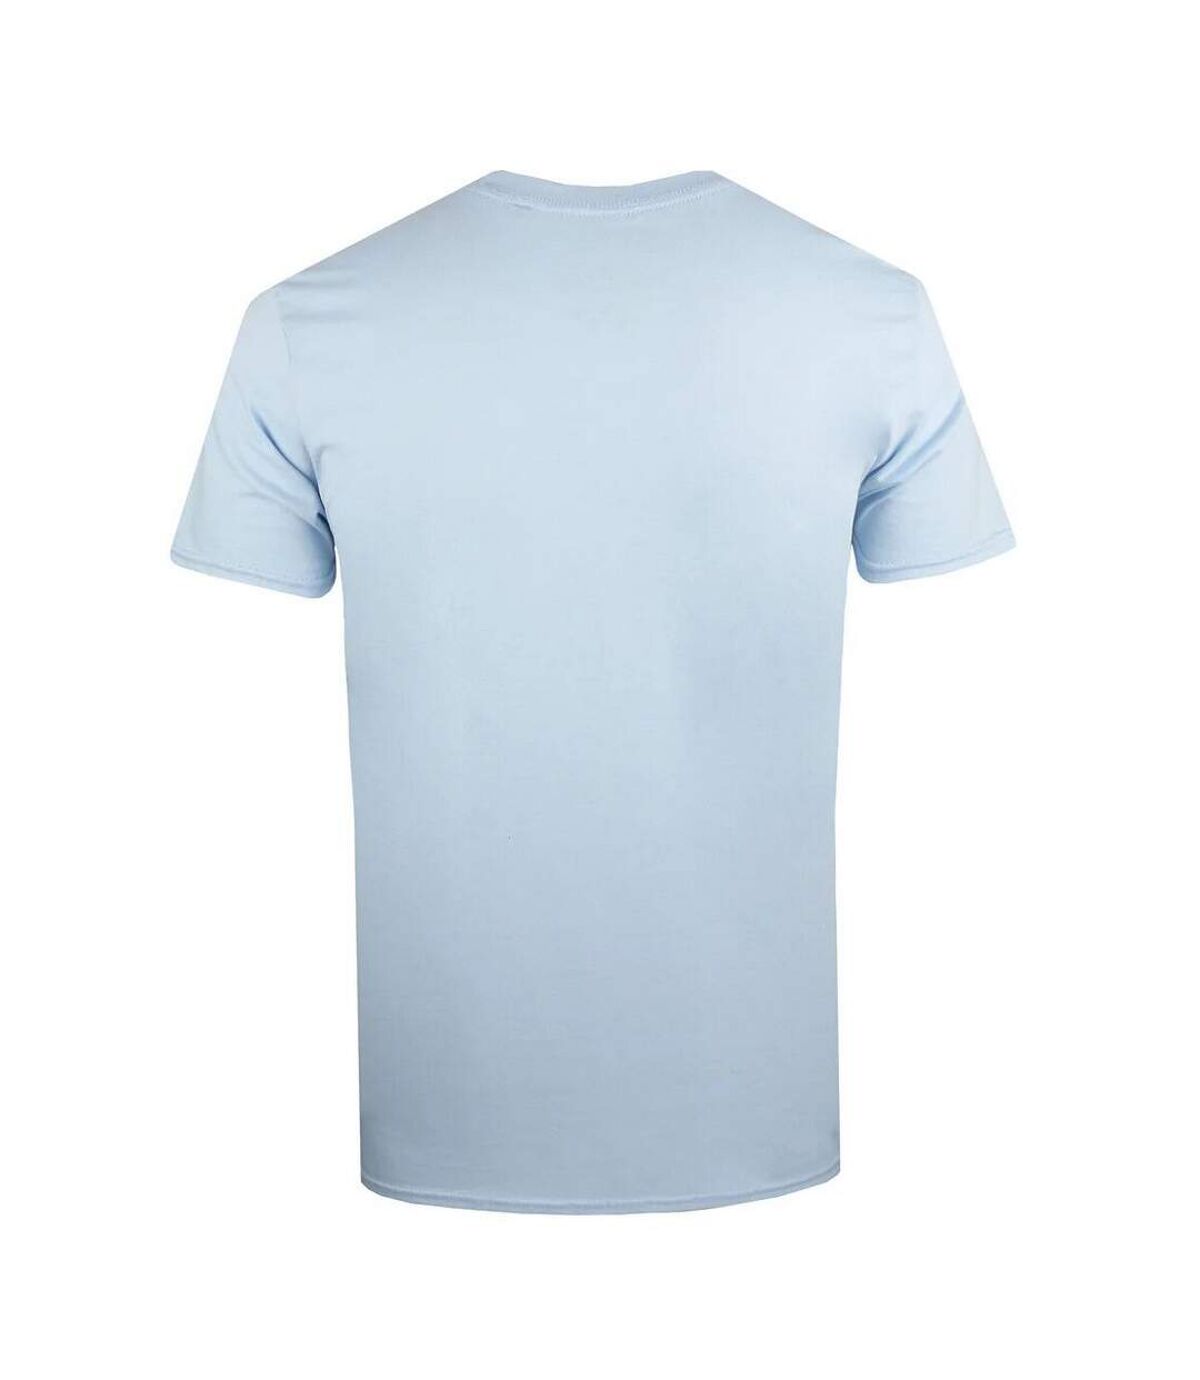 Pink Floyd T-shirt en coton avec affiches japonaises pour hommes (Bleu clair) - UTTV971